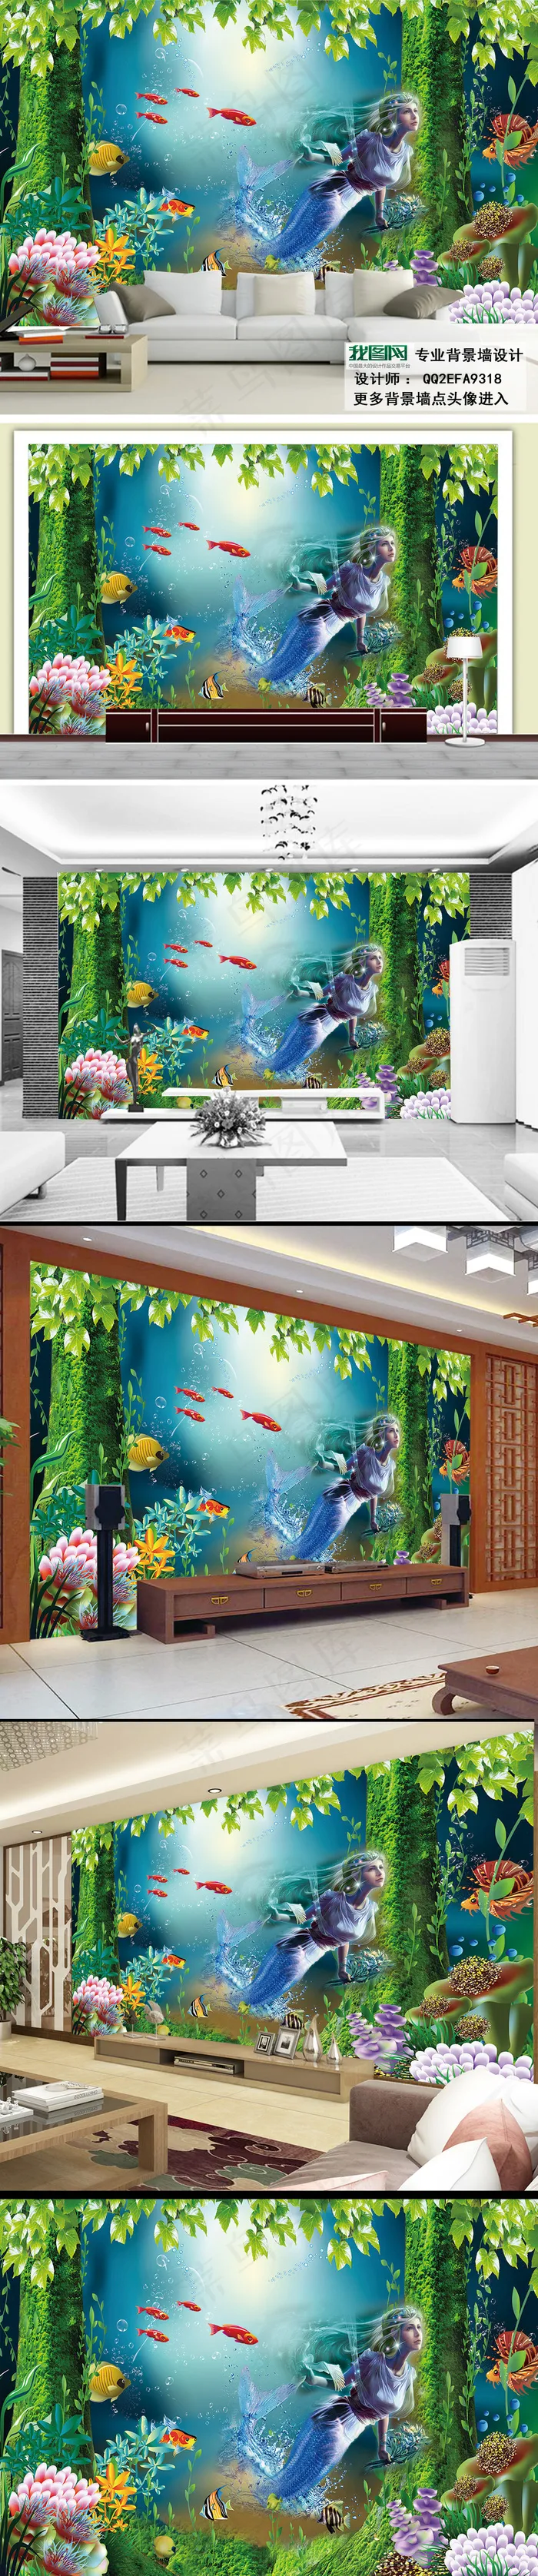 海底世界美人鱼3D电视沙发背景墙